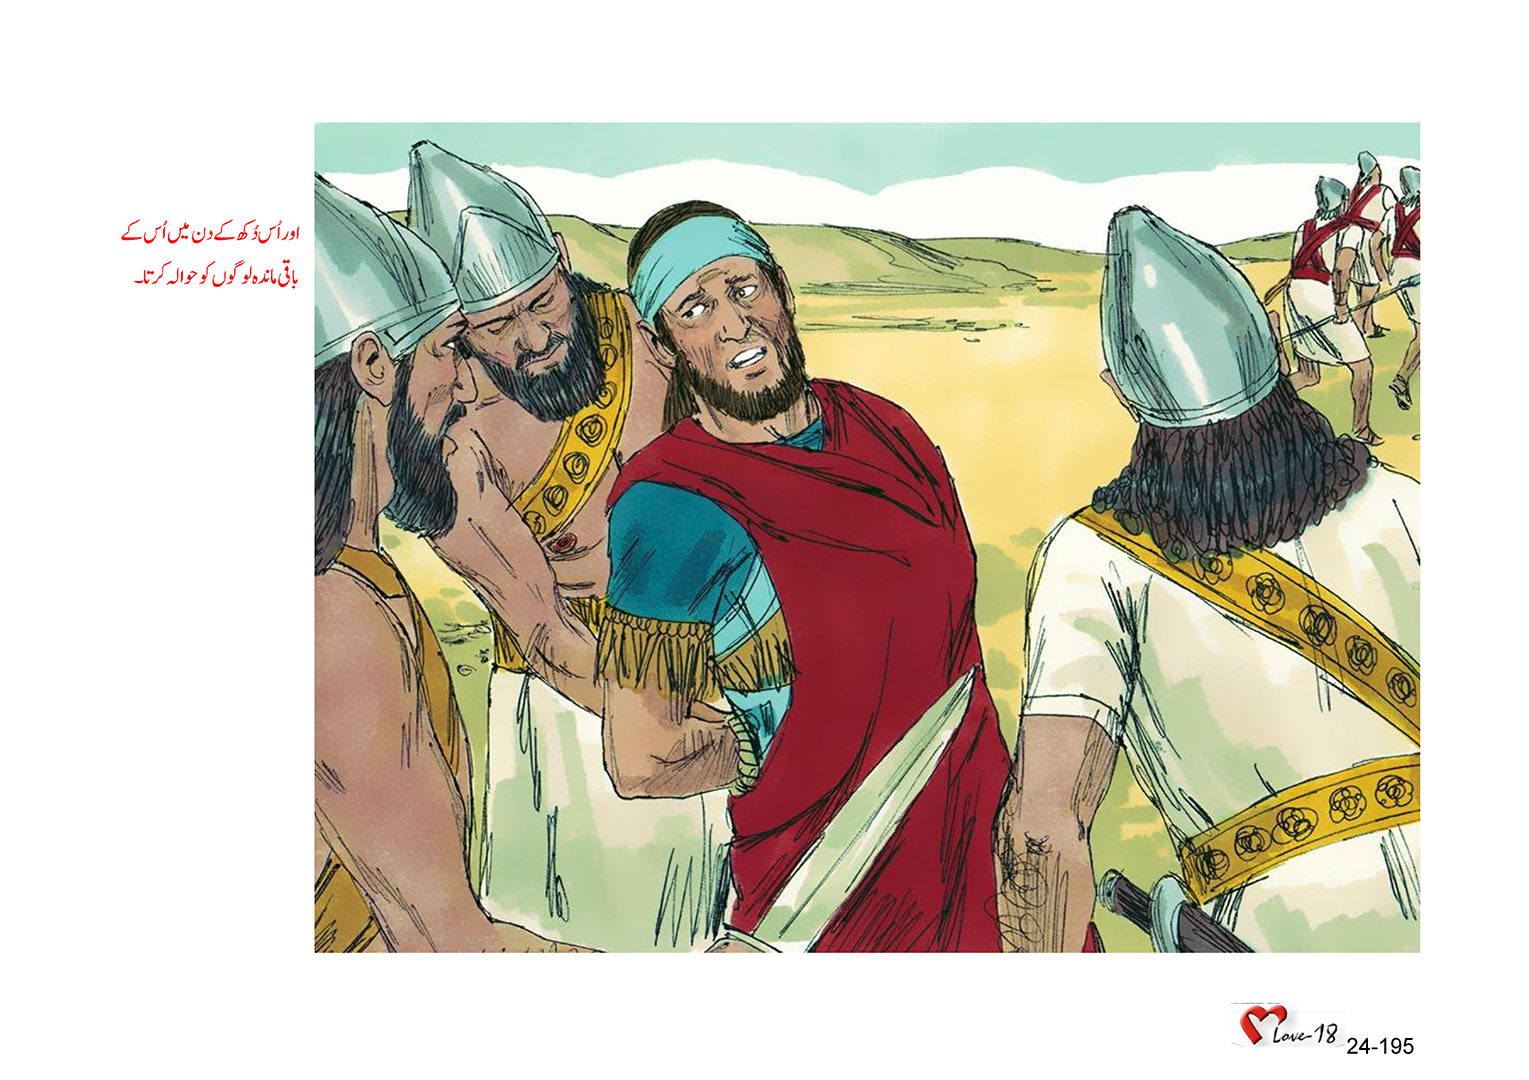 باب 24 - سبق 79 -  ادوم  میں  نبوت  کرنے  والا  نبی،  عبدیاہ